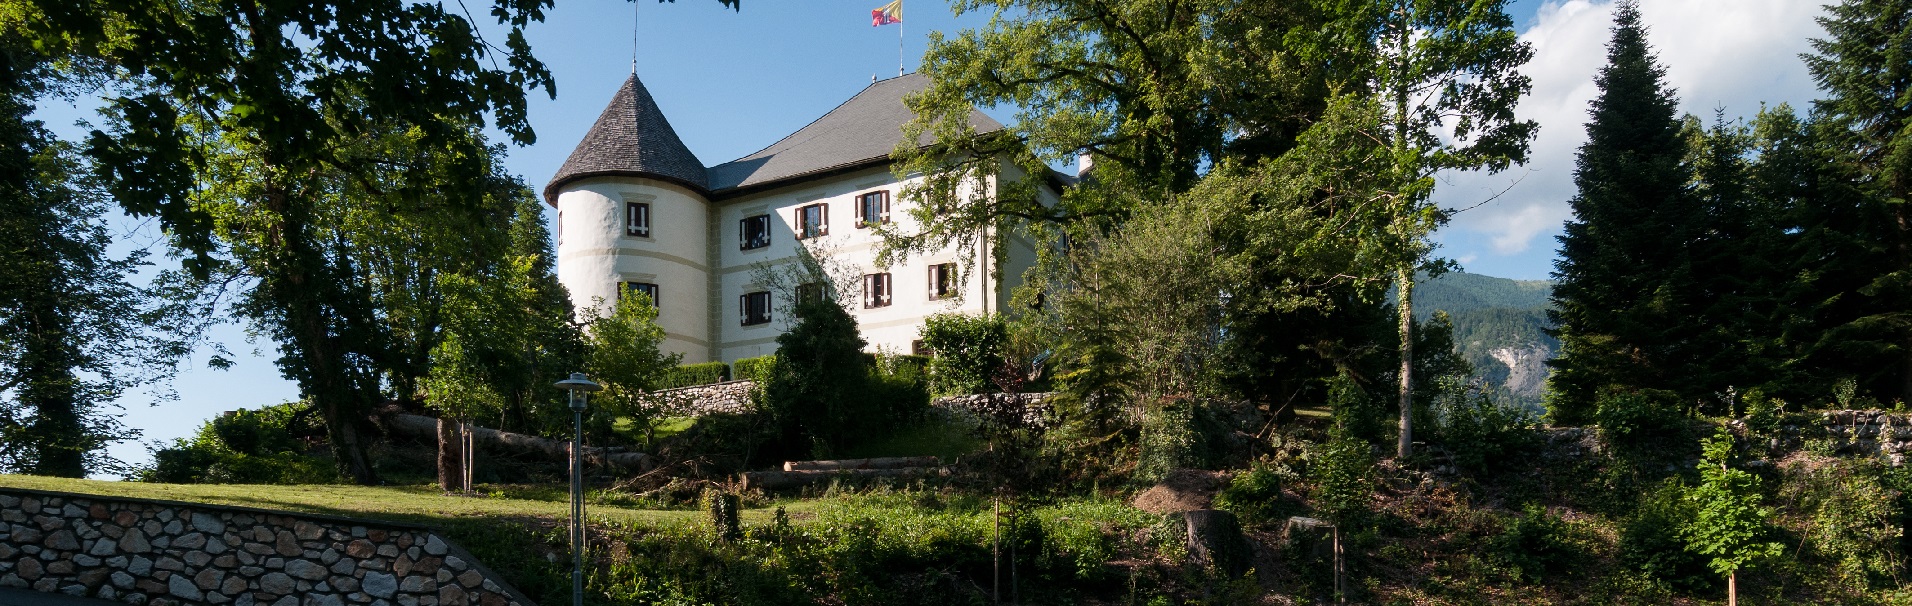 Schloss Kellerberg